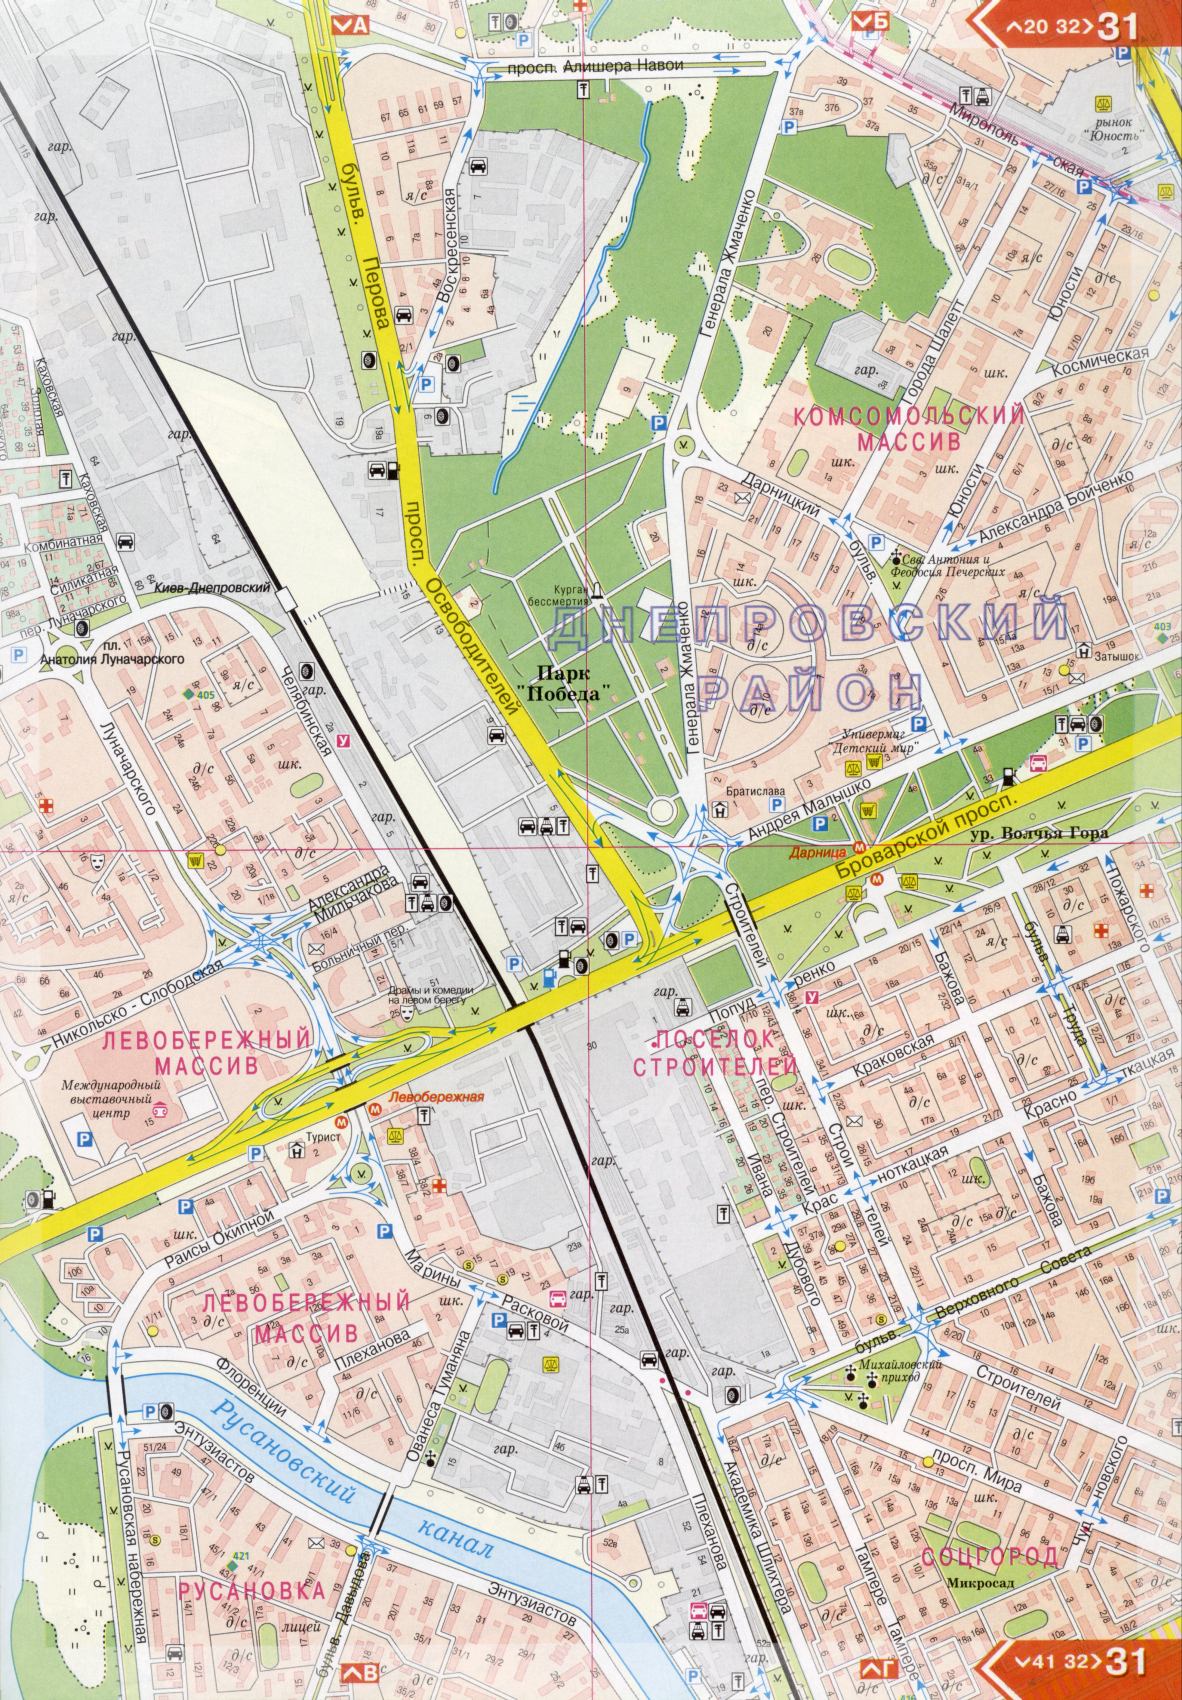 Kiew Karte Details 1cm = 150m für 45 Blatt. Karte von Kiew aus dem Atlas von Autobahnen. Laden Sie eine detaillierte Karte, H2